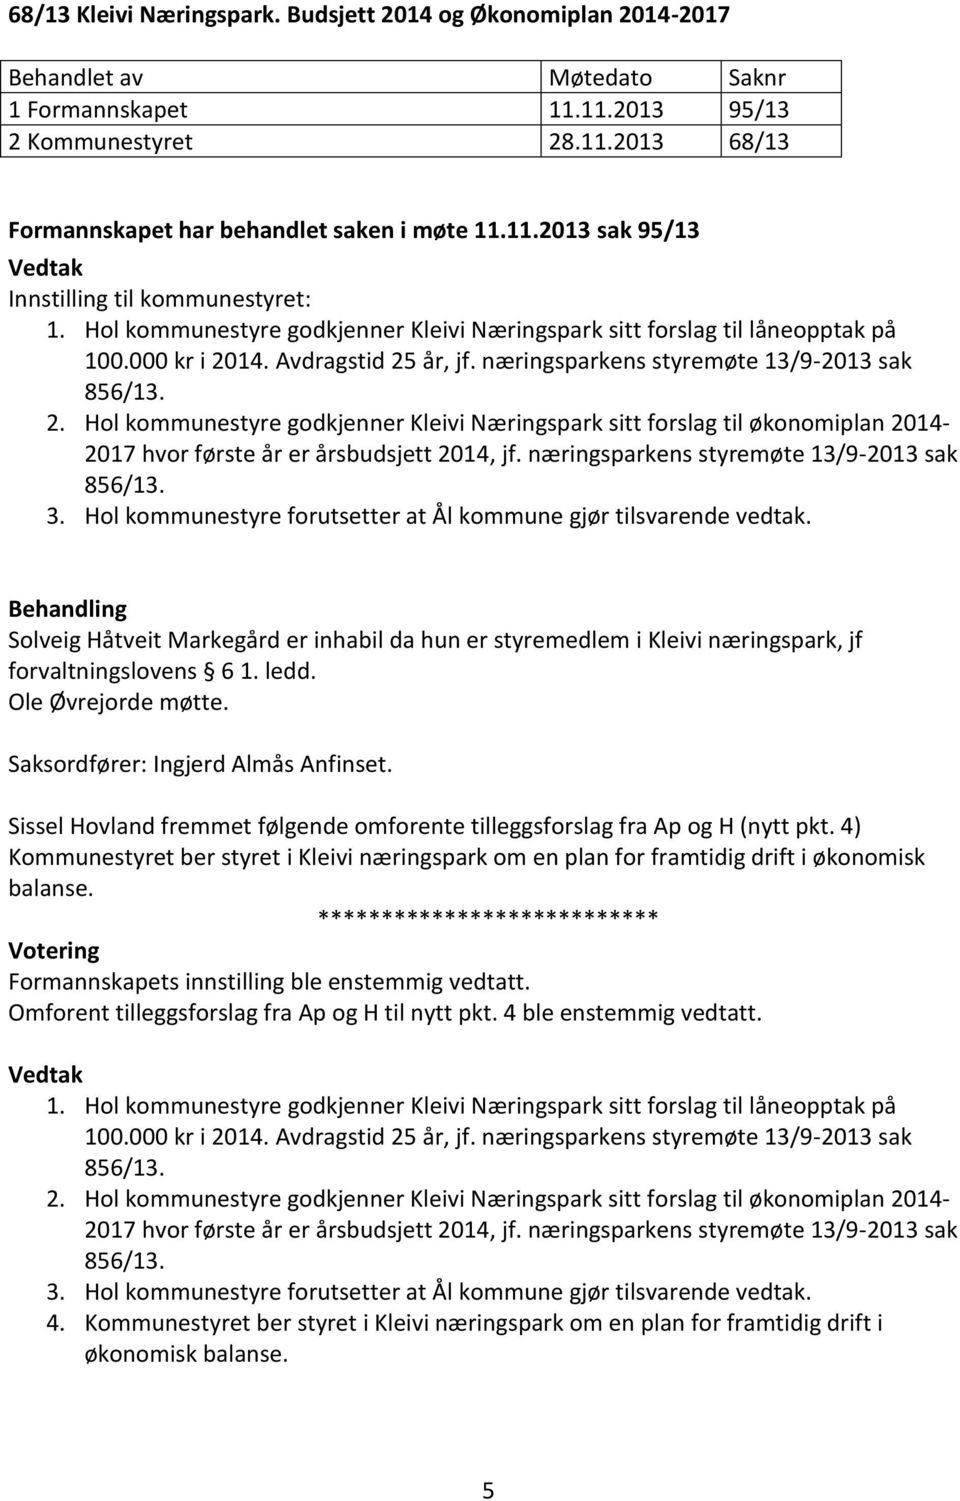 næringsparkens styremøte 13/9-2013 sak 856/13. 2. styre godkjenner Kleivi Næringspark sitt forslag til økonomiplan 2014-2017 hvor første år er årsbudsjett 2014, jf.